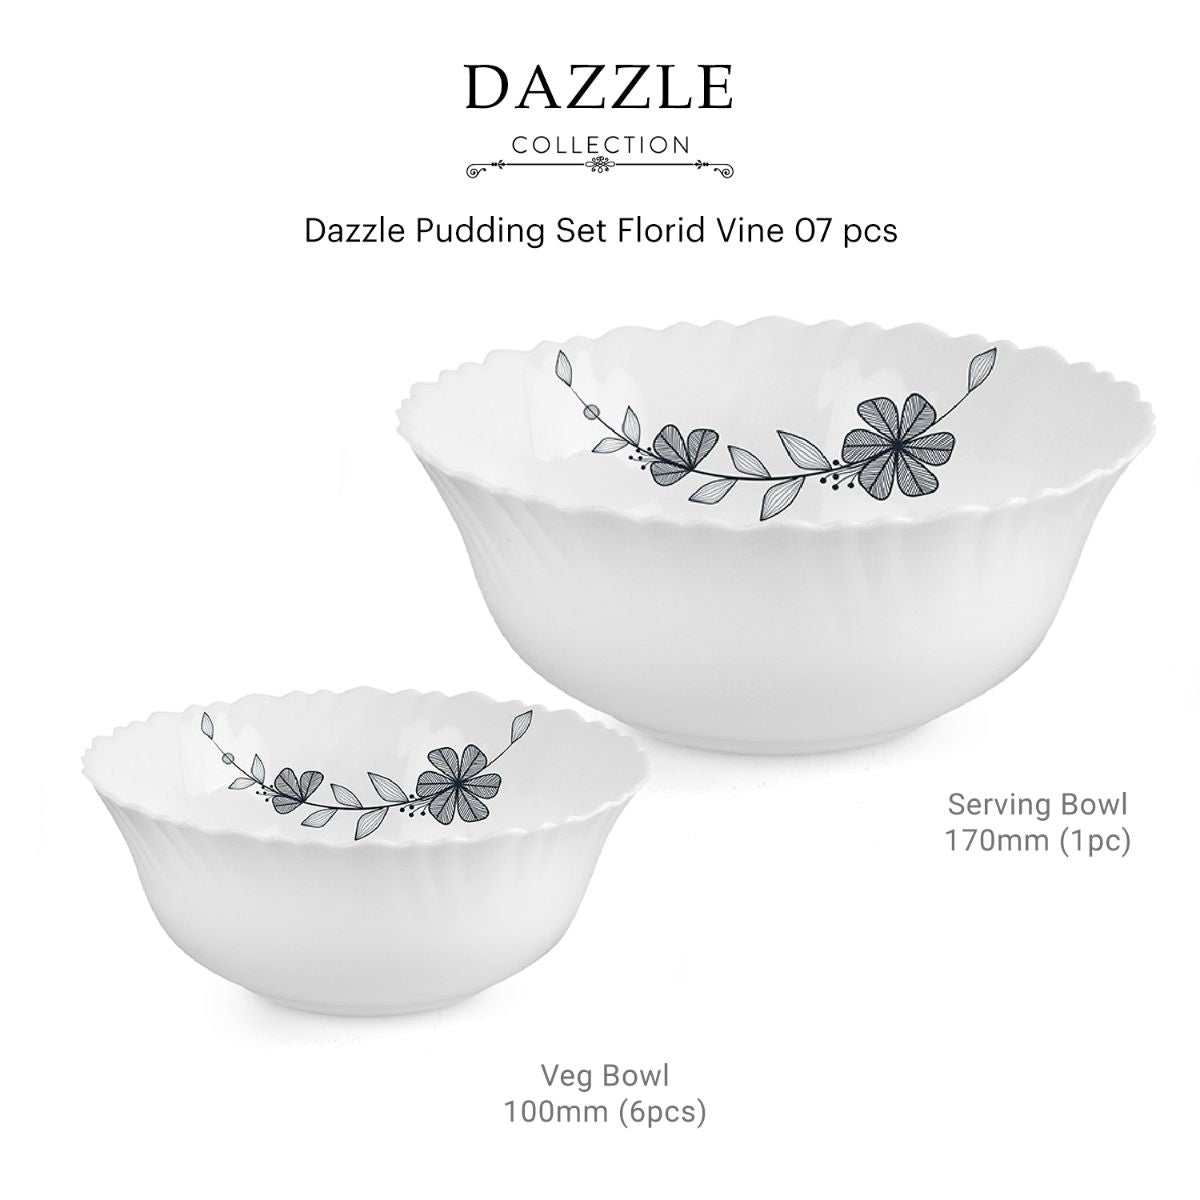 Dazzle Series Pudding Gift Set, 7 Pieces Florid Vine / 7 Pieces